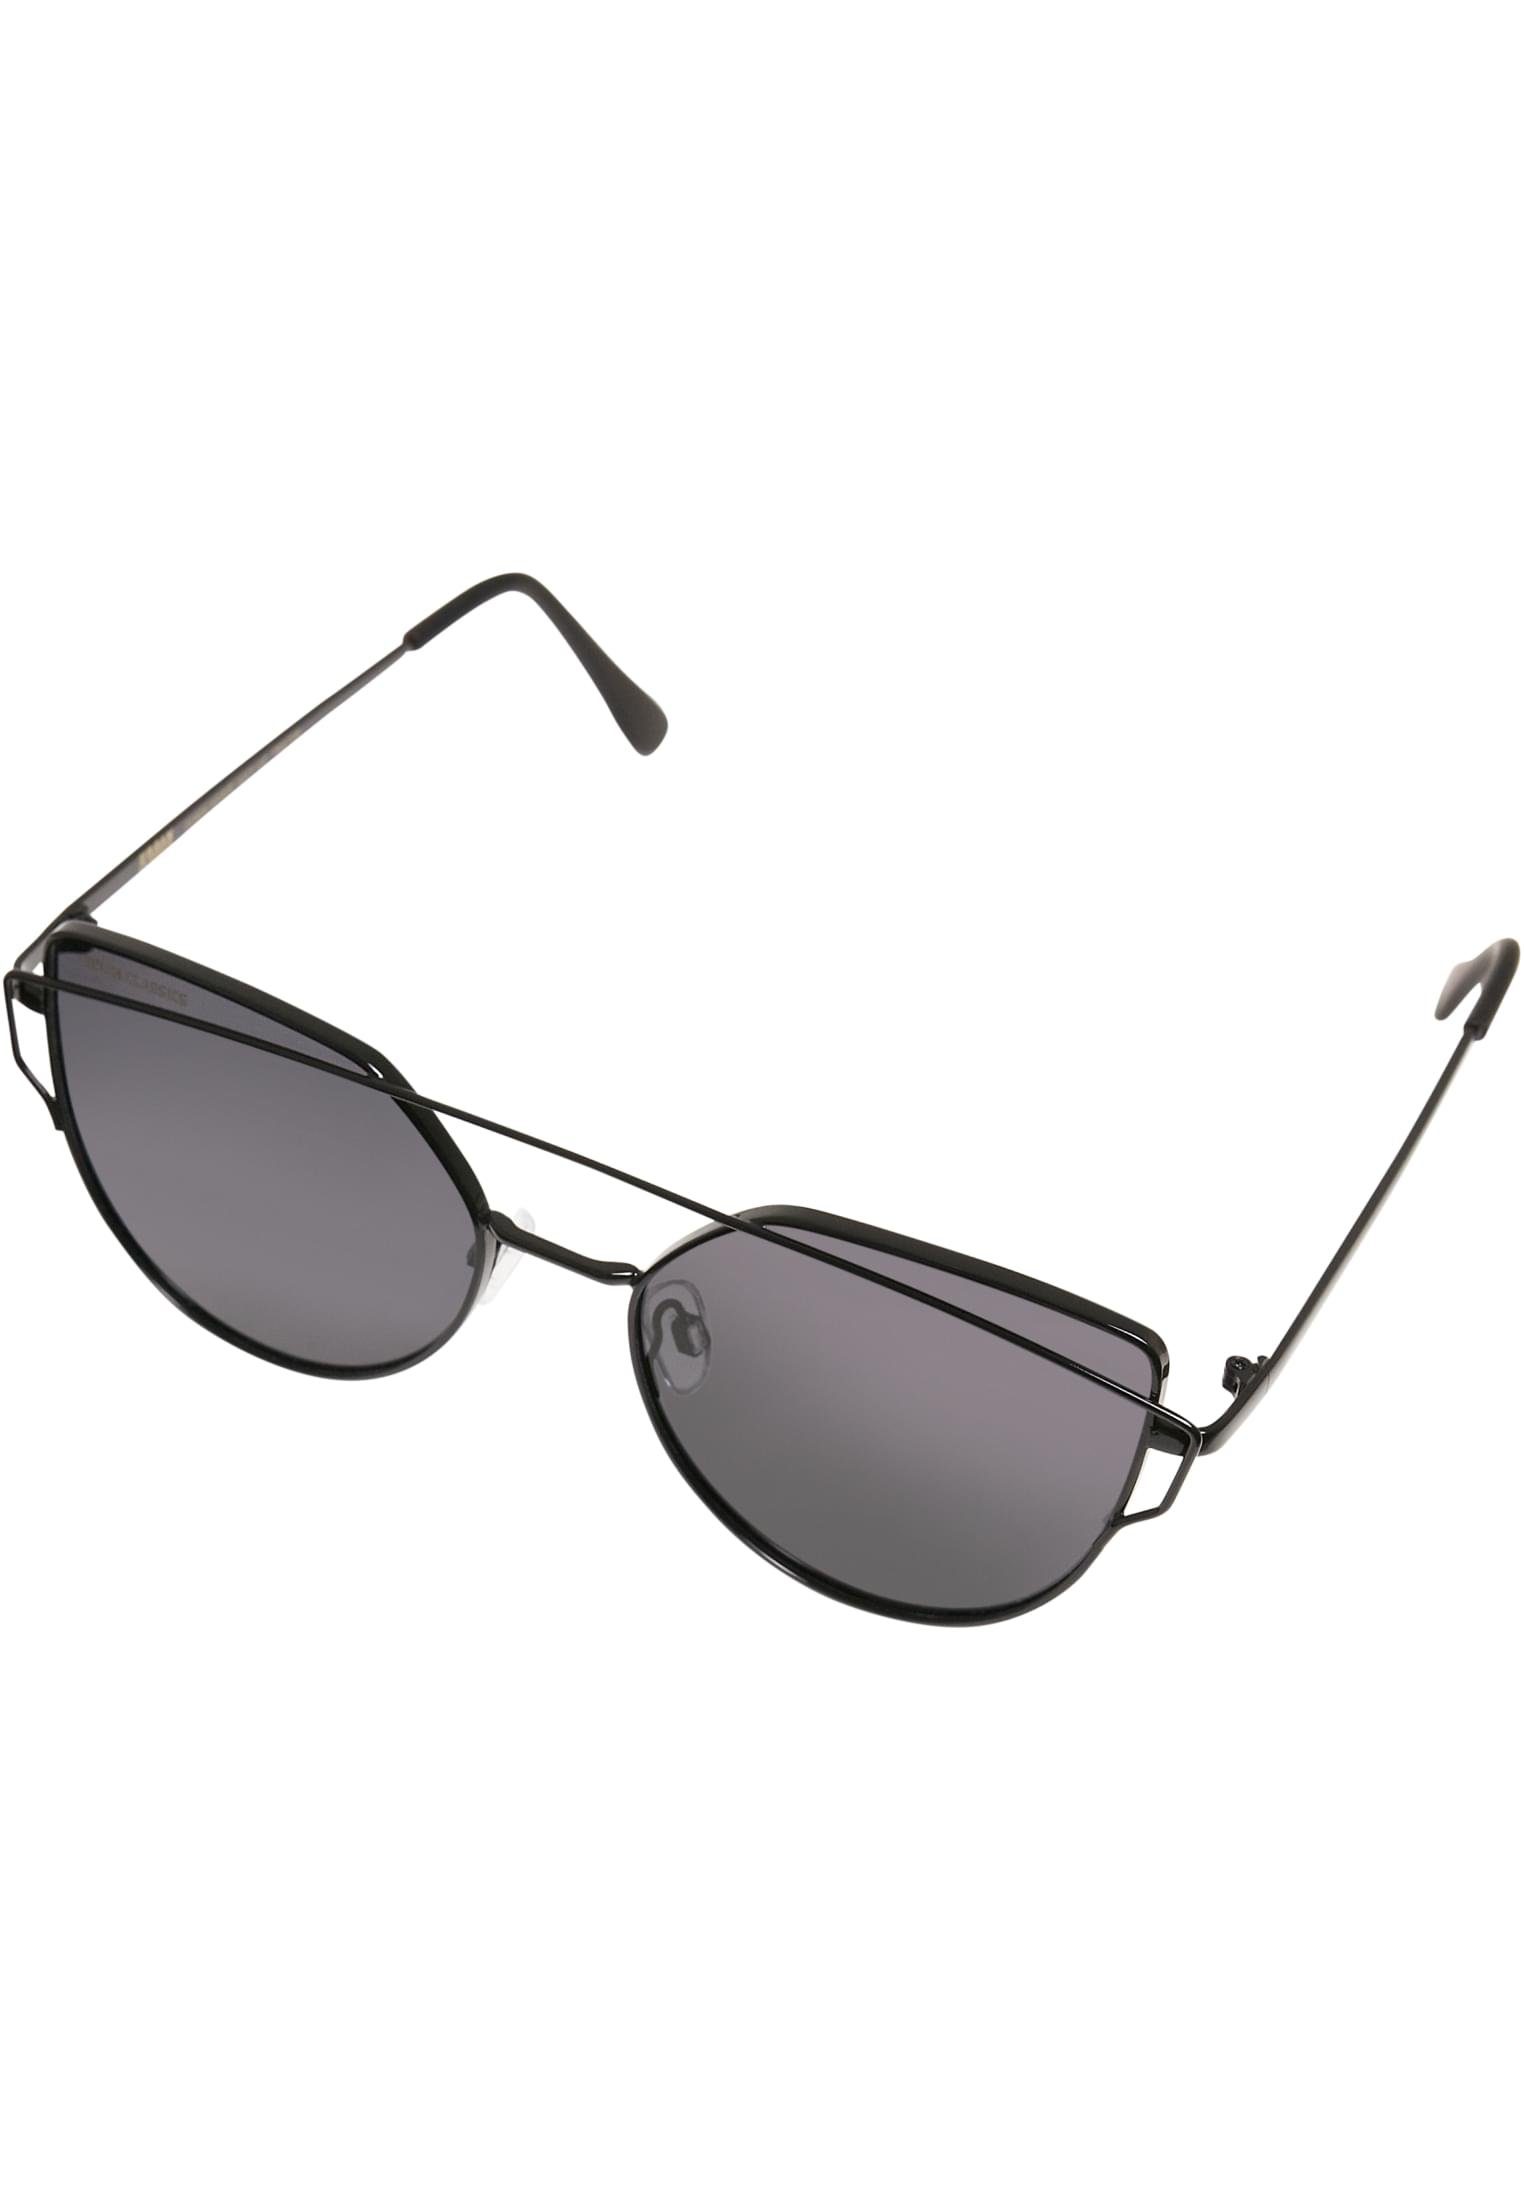 URBAN CLASSICS Sonnenbrille Accessoires Sunglasses July UC black